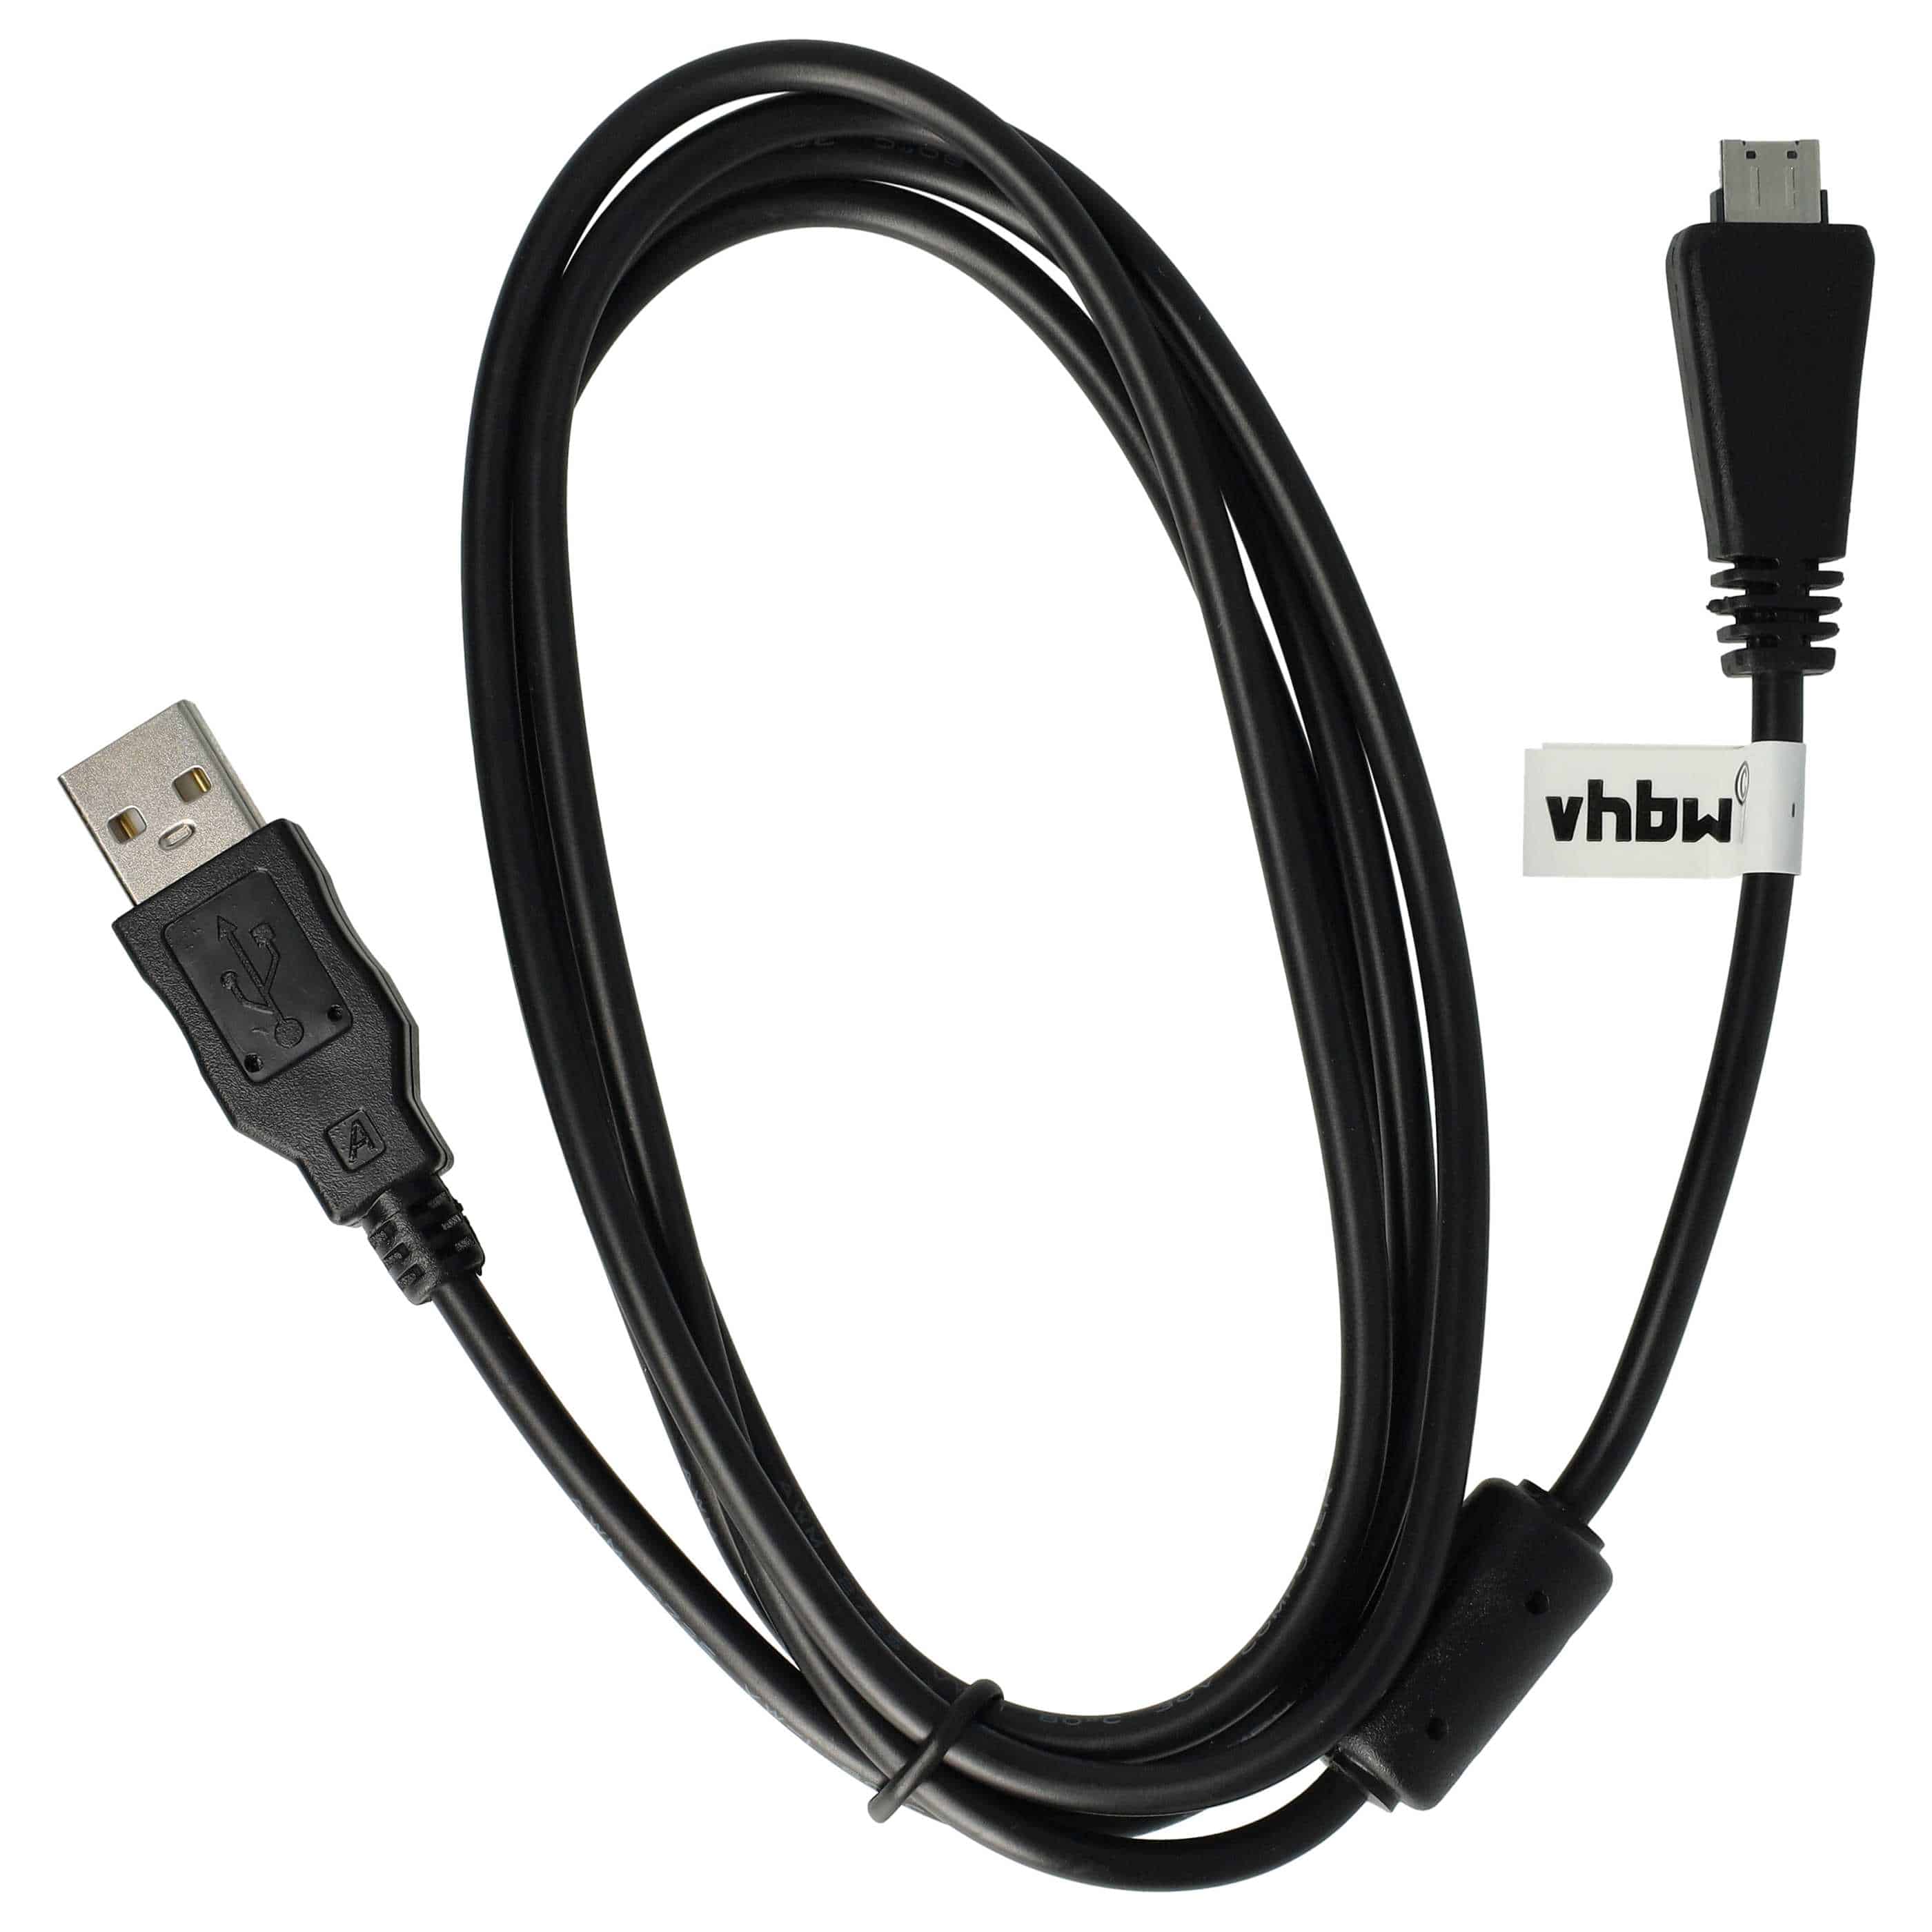 Kabel USB do aparatu Sony zamiennik Sony VMC-MD3 (bez funkcji AV) - 150 cm 